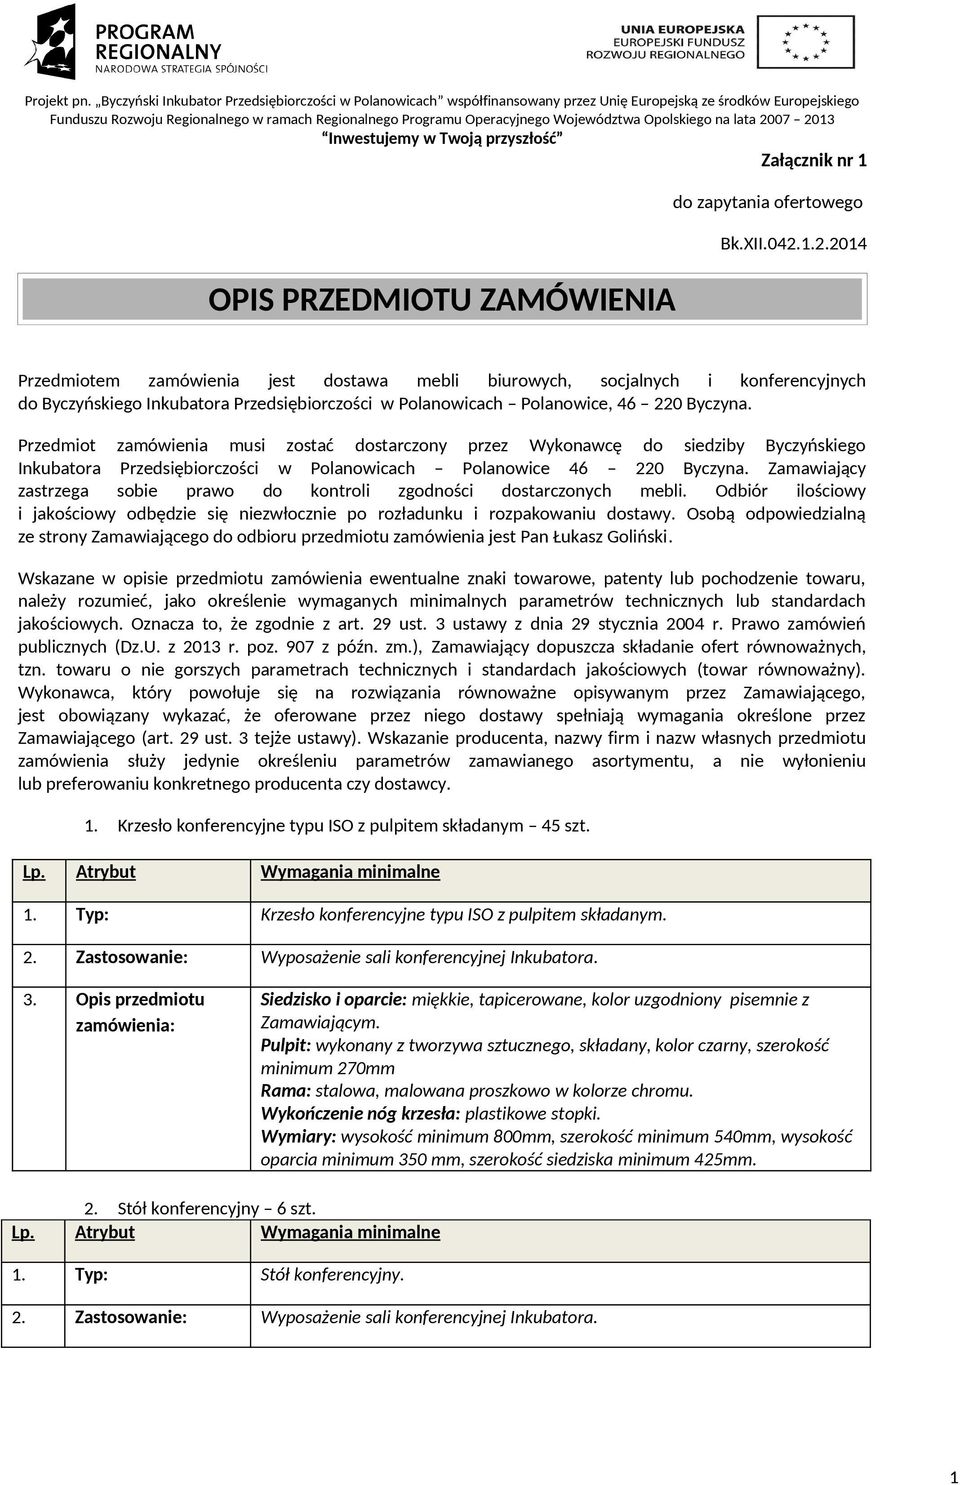 Przedmiot zamówienia musi zostać dostarczony przez Wykonawcę do siedziby Byczyńskiego Inkubatora Przedsiębiorczości w Polanowicach Polanowice 46 220 Byczyna.